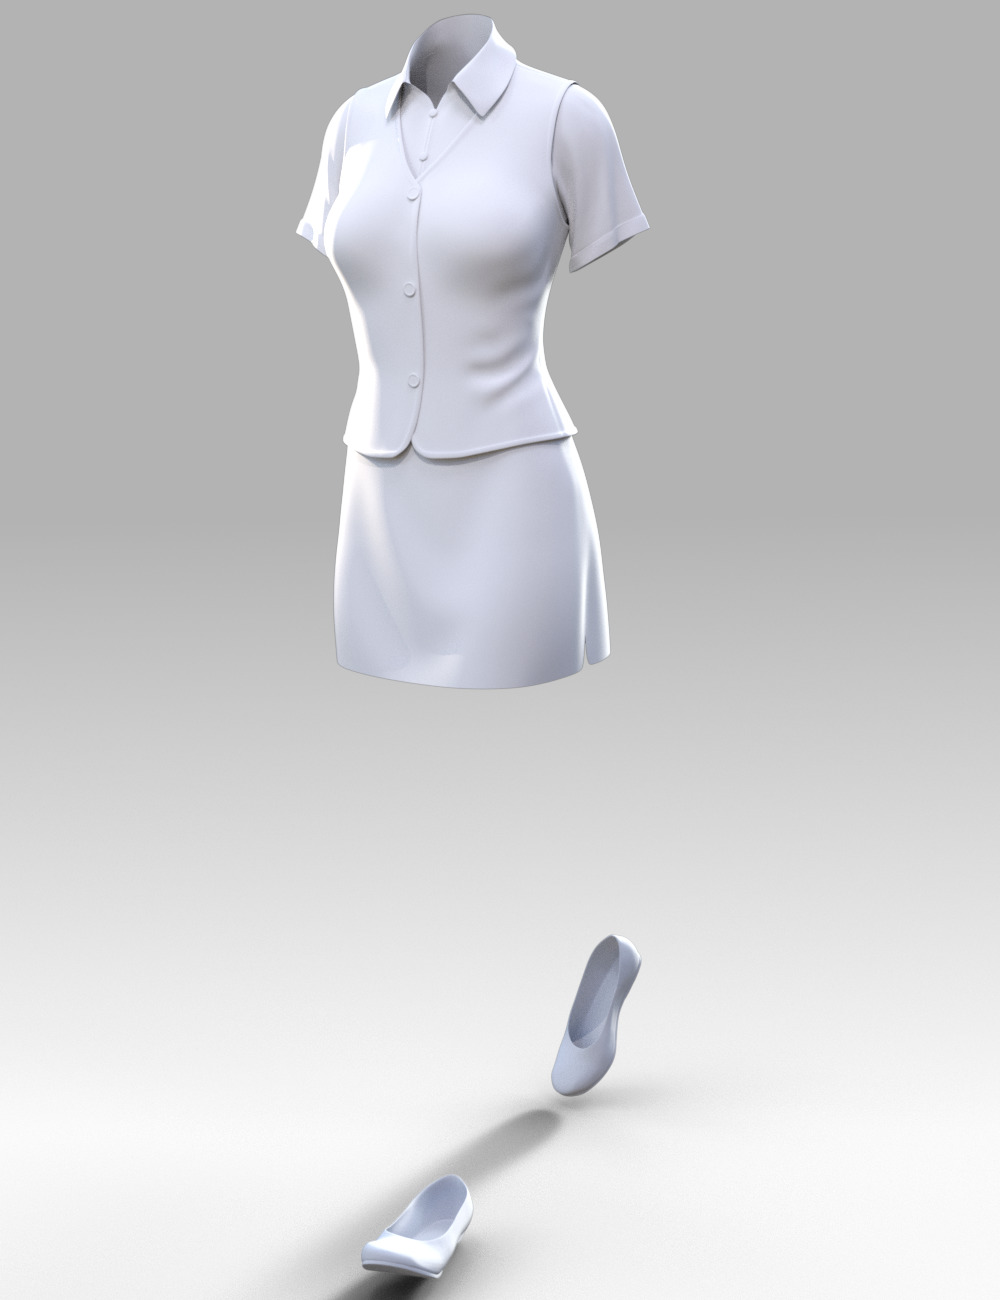 dForce Clerk Outfit for Genesis 8 Females by: tentman, 3D Models by Daz 3D